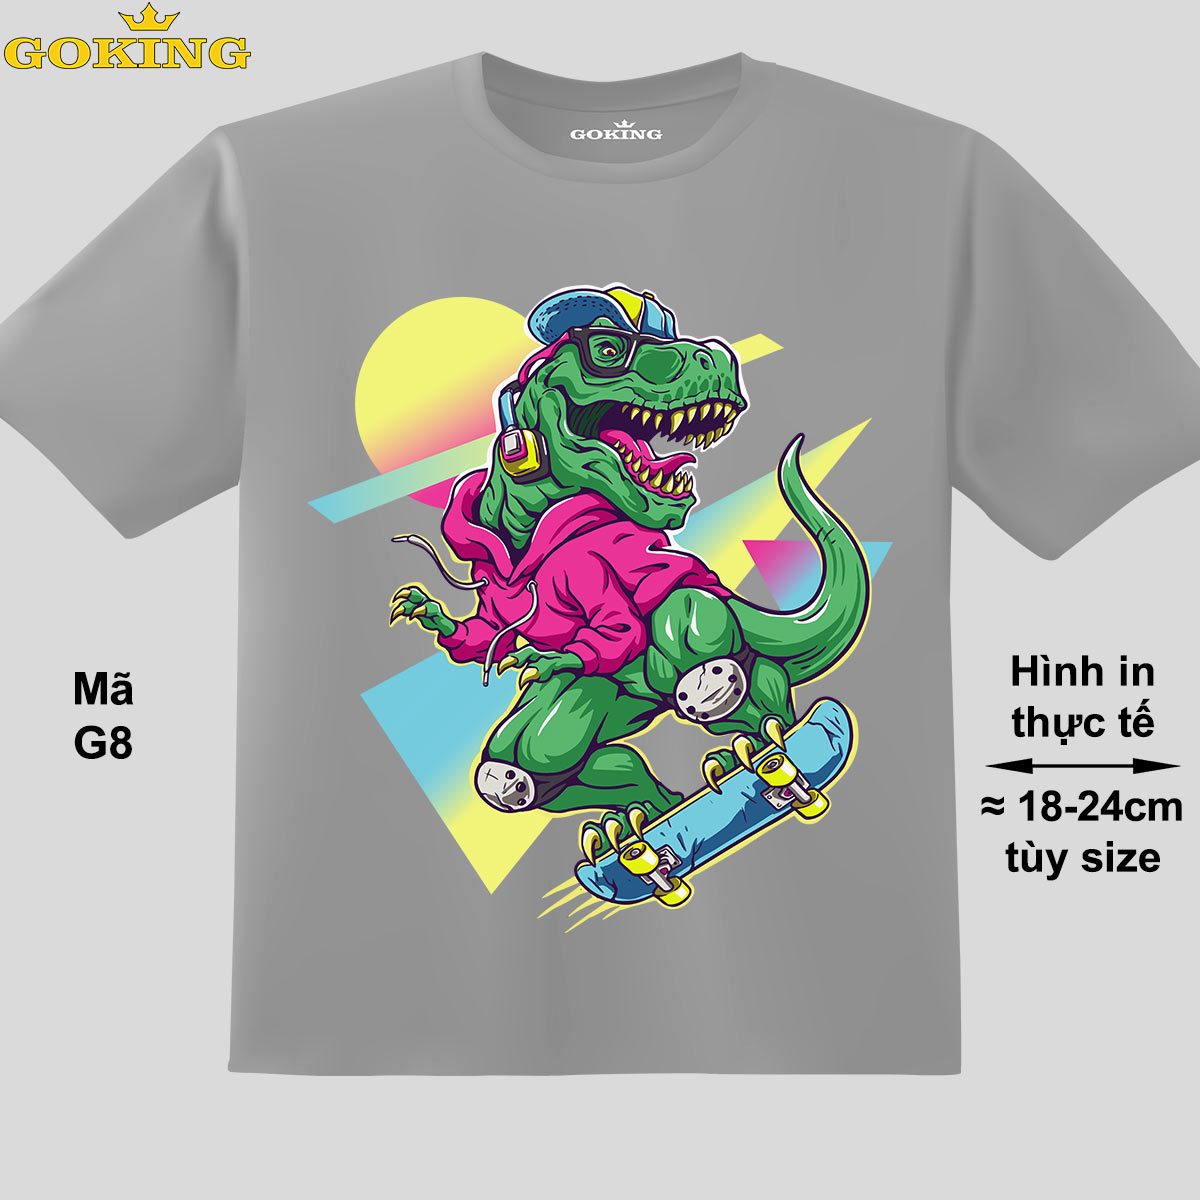 khủng long, mã g8. áo thun trẻ em siêu đẹp. áo phông in hình cho bé trai, bé gái 2